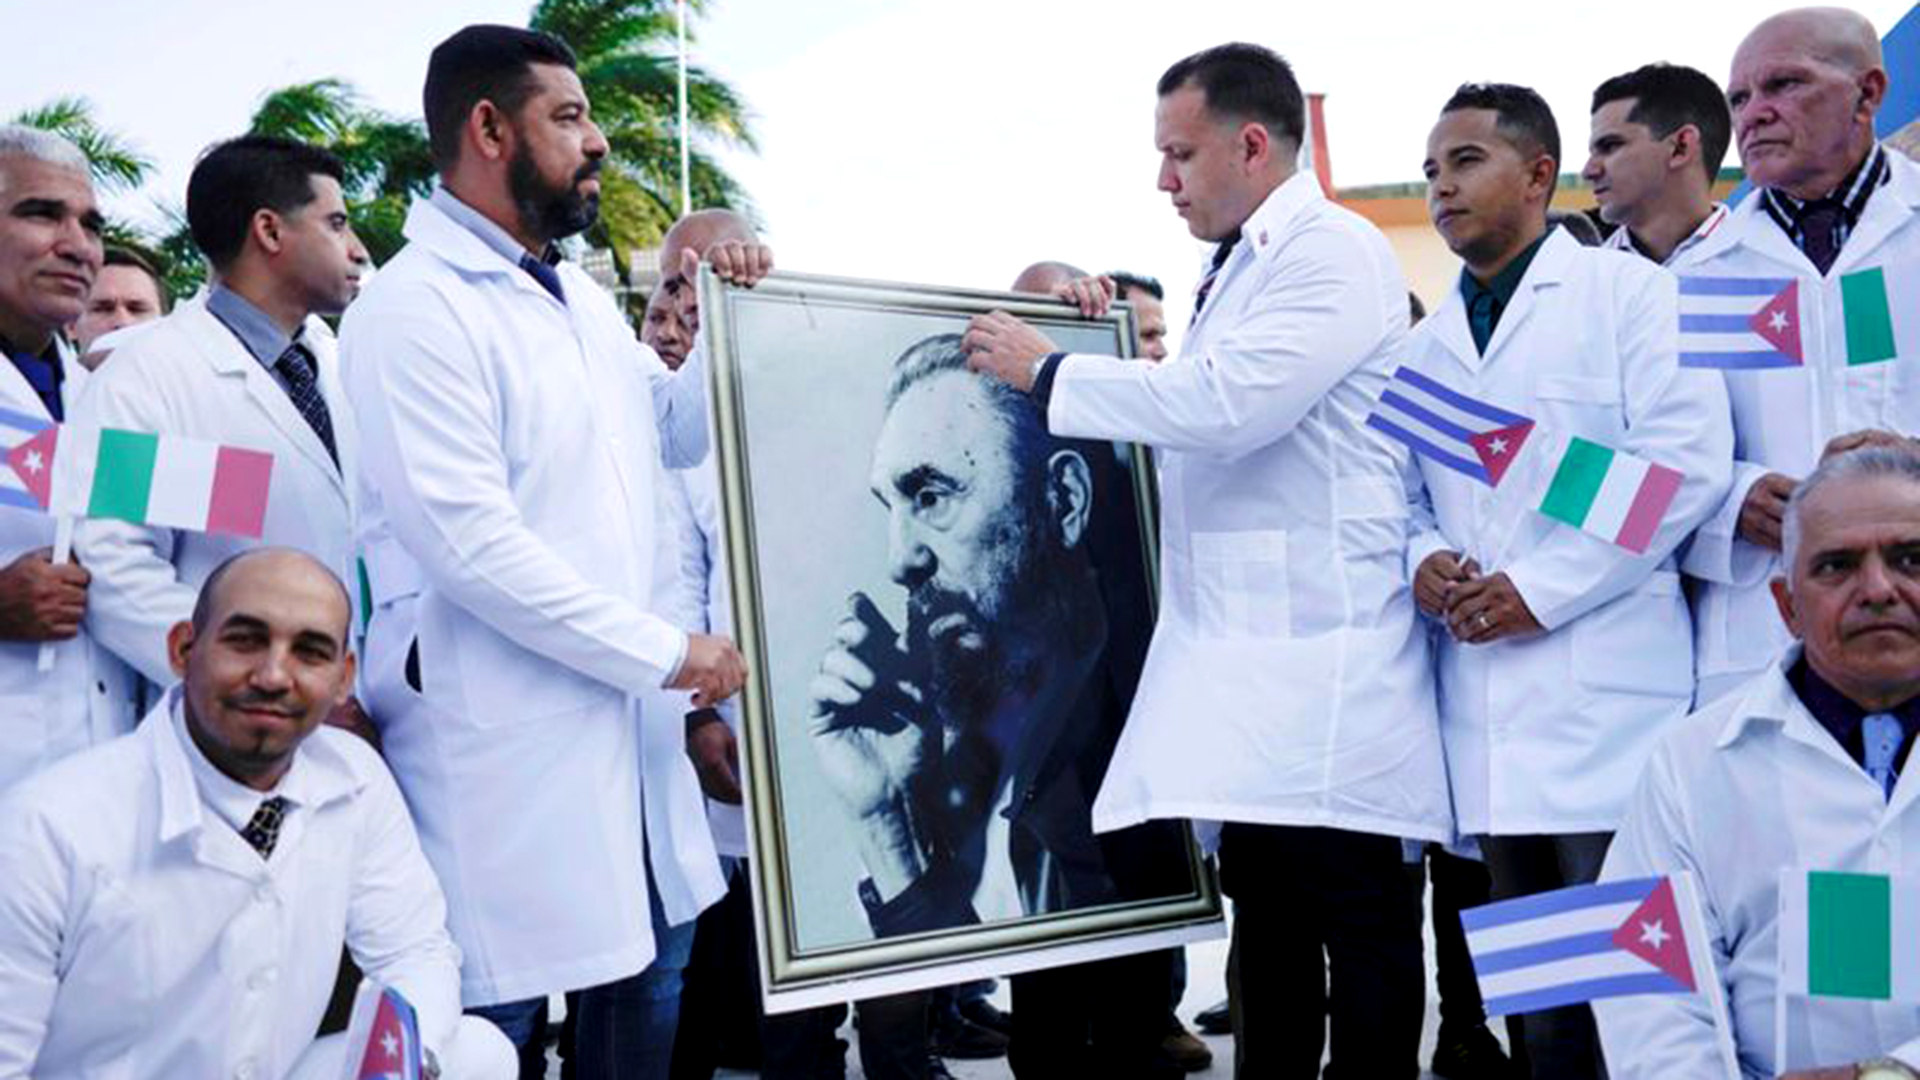 El gobierno cubano ha aprovechado el coronavirus para desplegar una gigantesca operación financiera y propagandística mundial (Reuters)